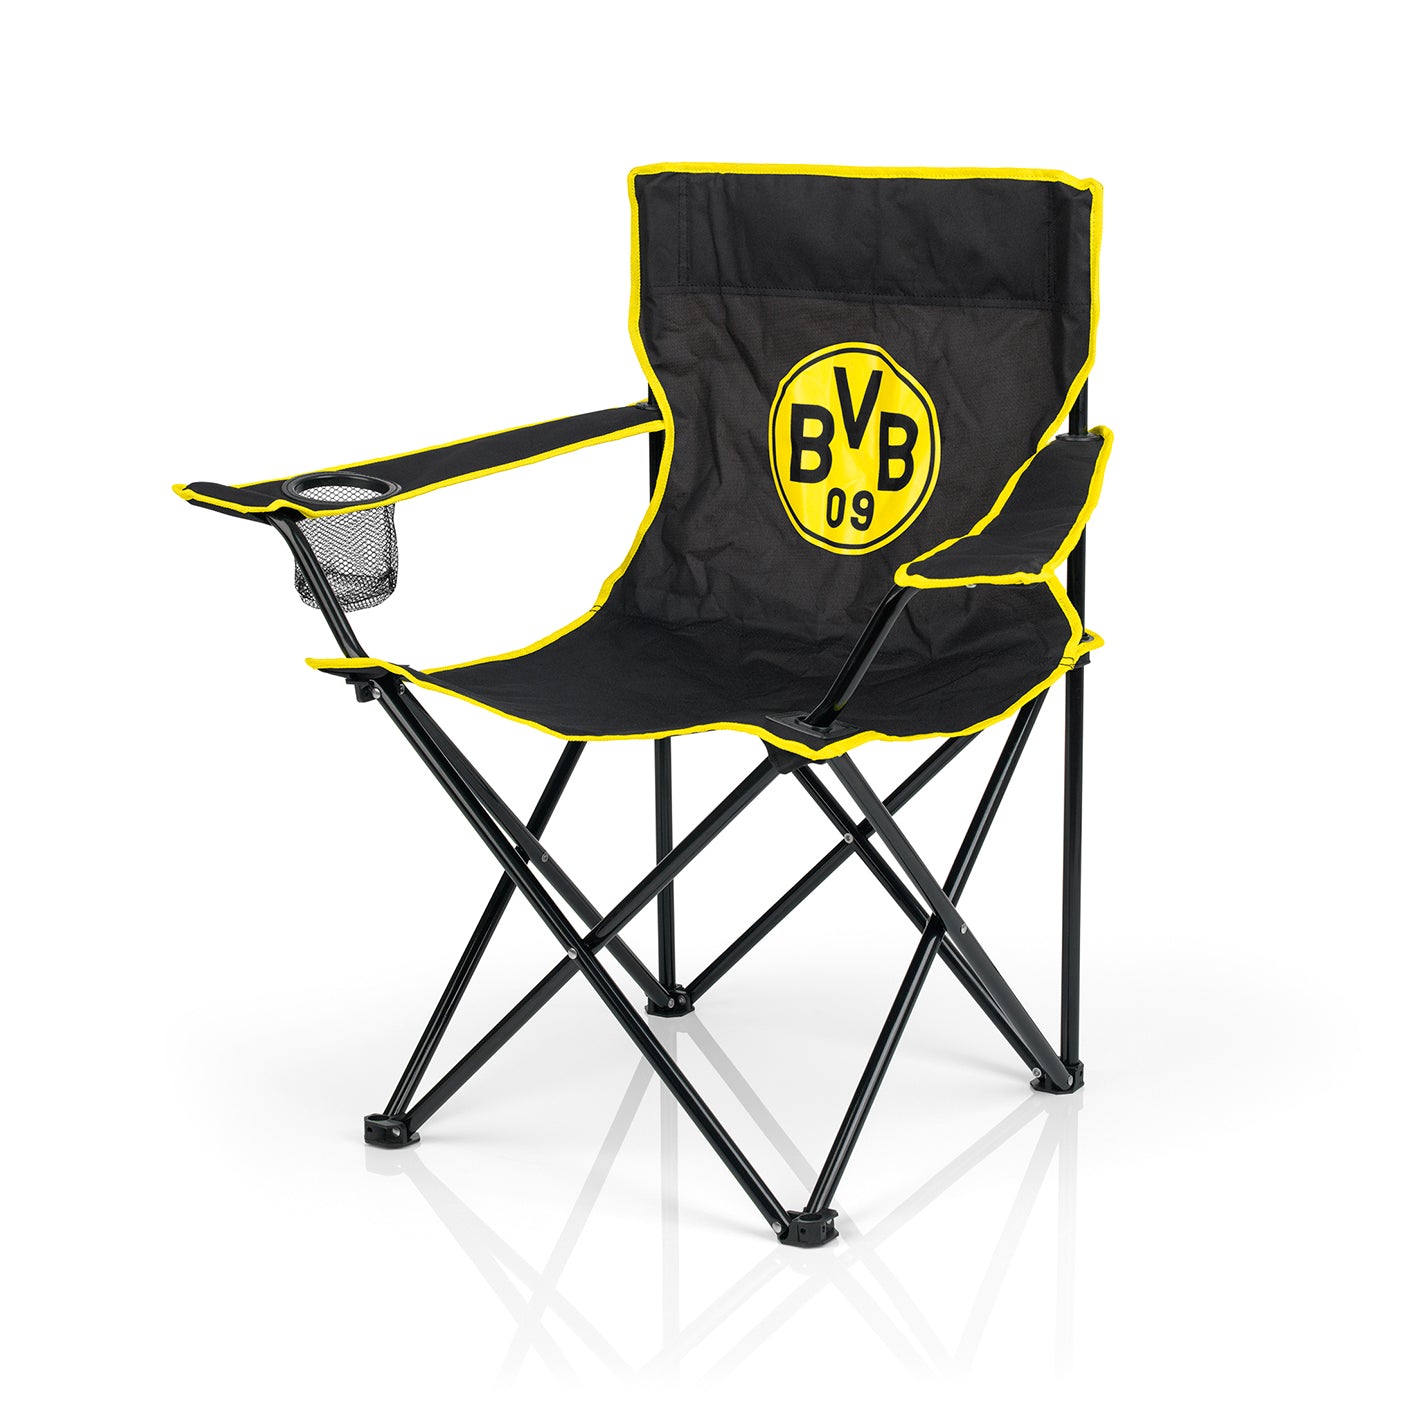 Campingstuhl faltbar - 80x50 cm - schwarz/gelb mit Logo